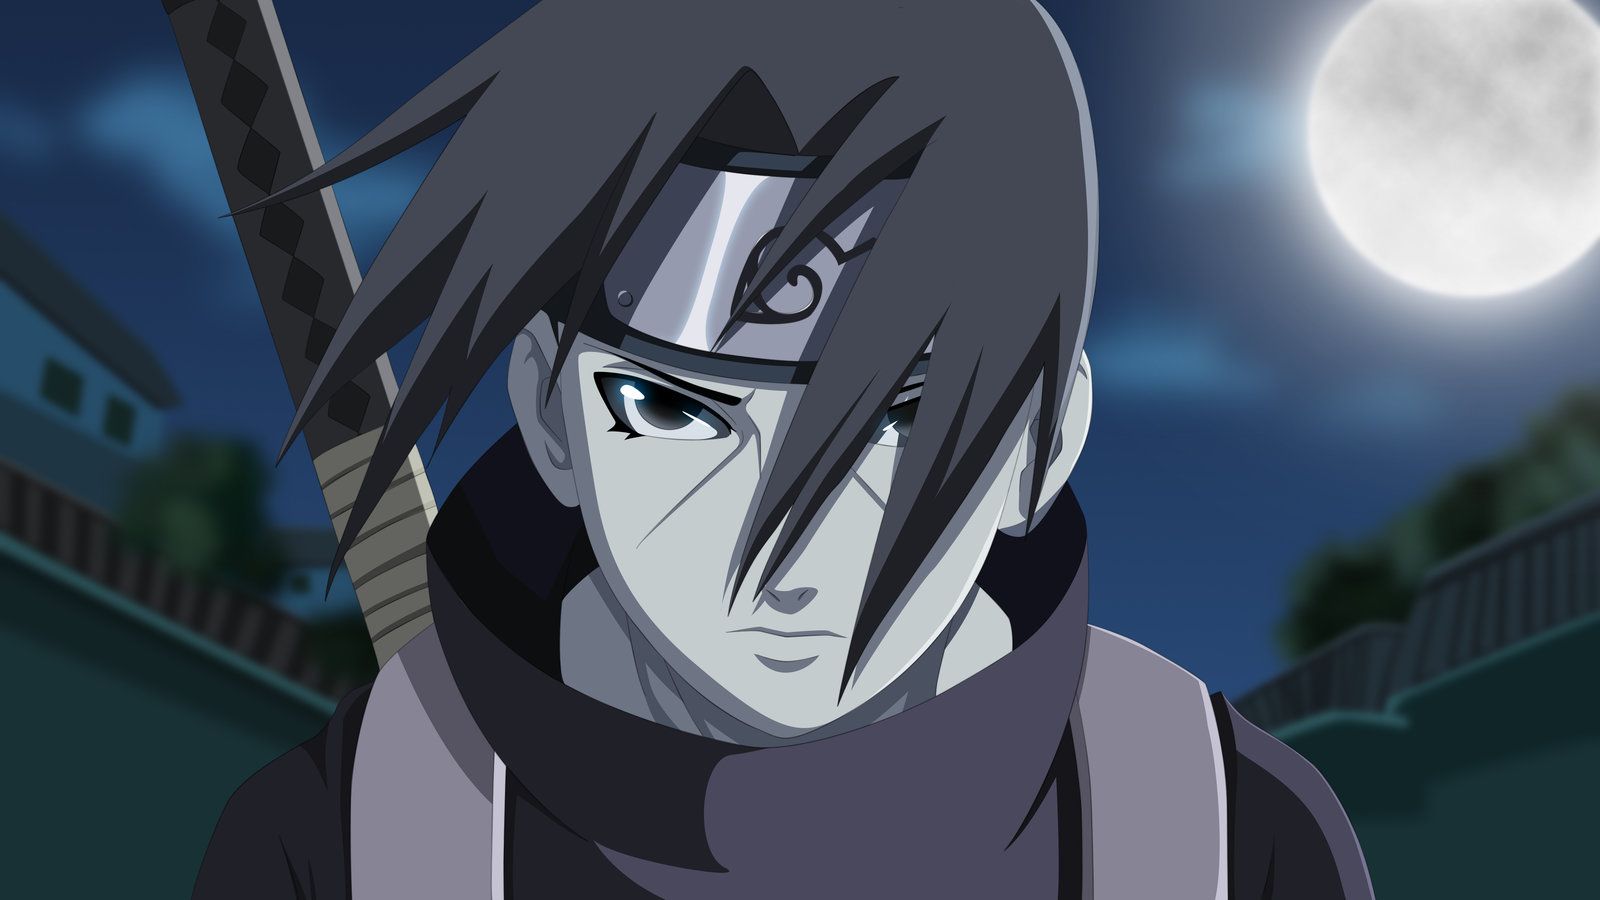 Itachi - Nhân vật nhỏ tuổi nhất của gia tộc Uchiha nhưng đã trở thành một trong những ninja mạnh nhất lịch sử Naruto. Chắc chắn bạn sẽ thích ngắm nhìn hình nền Itachi đầy bí ẩn này!